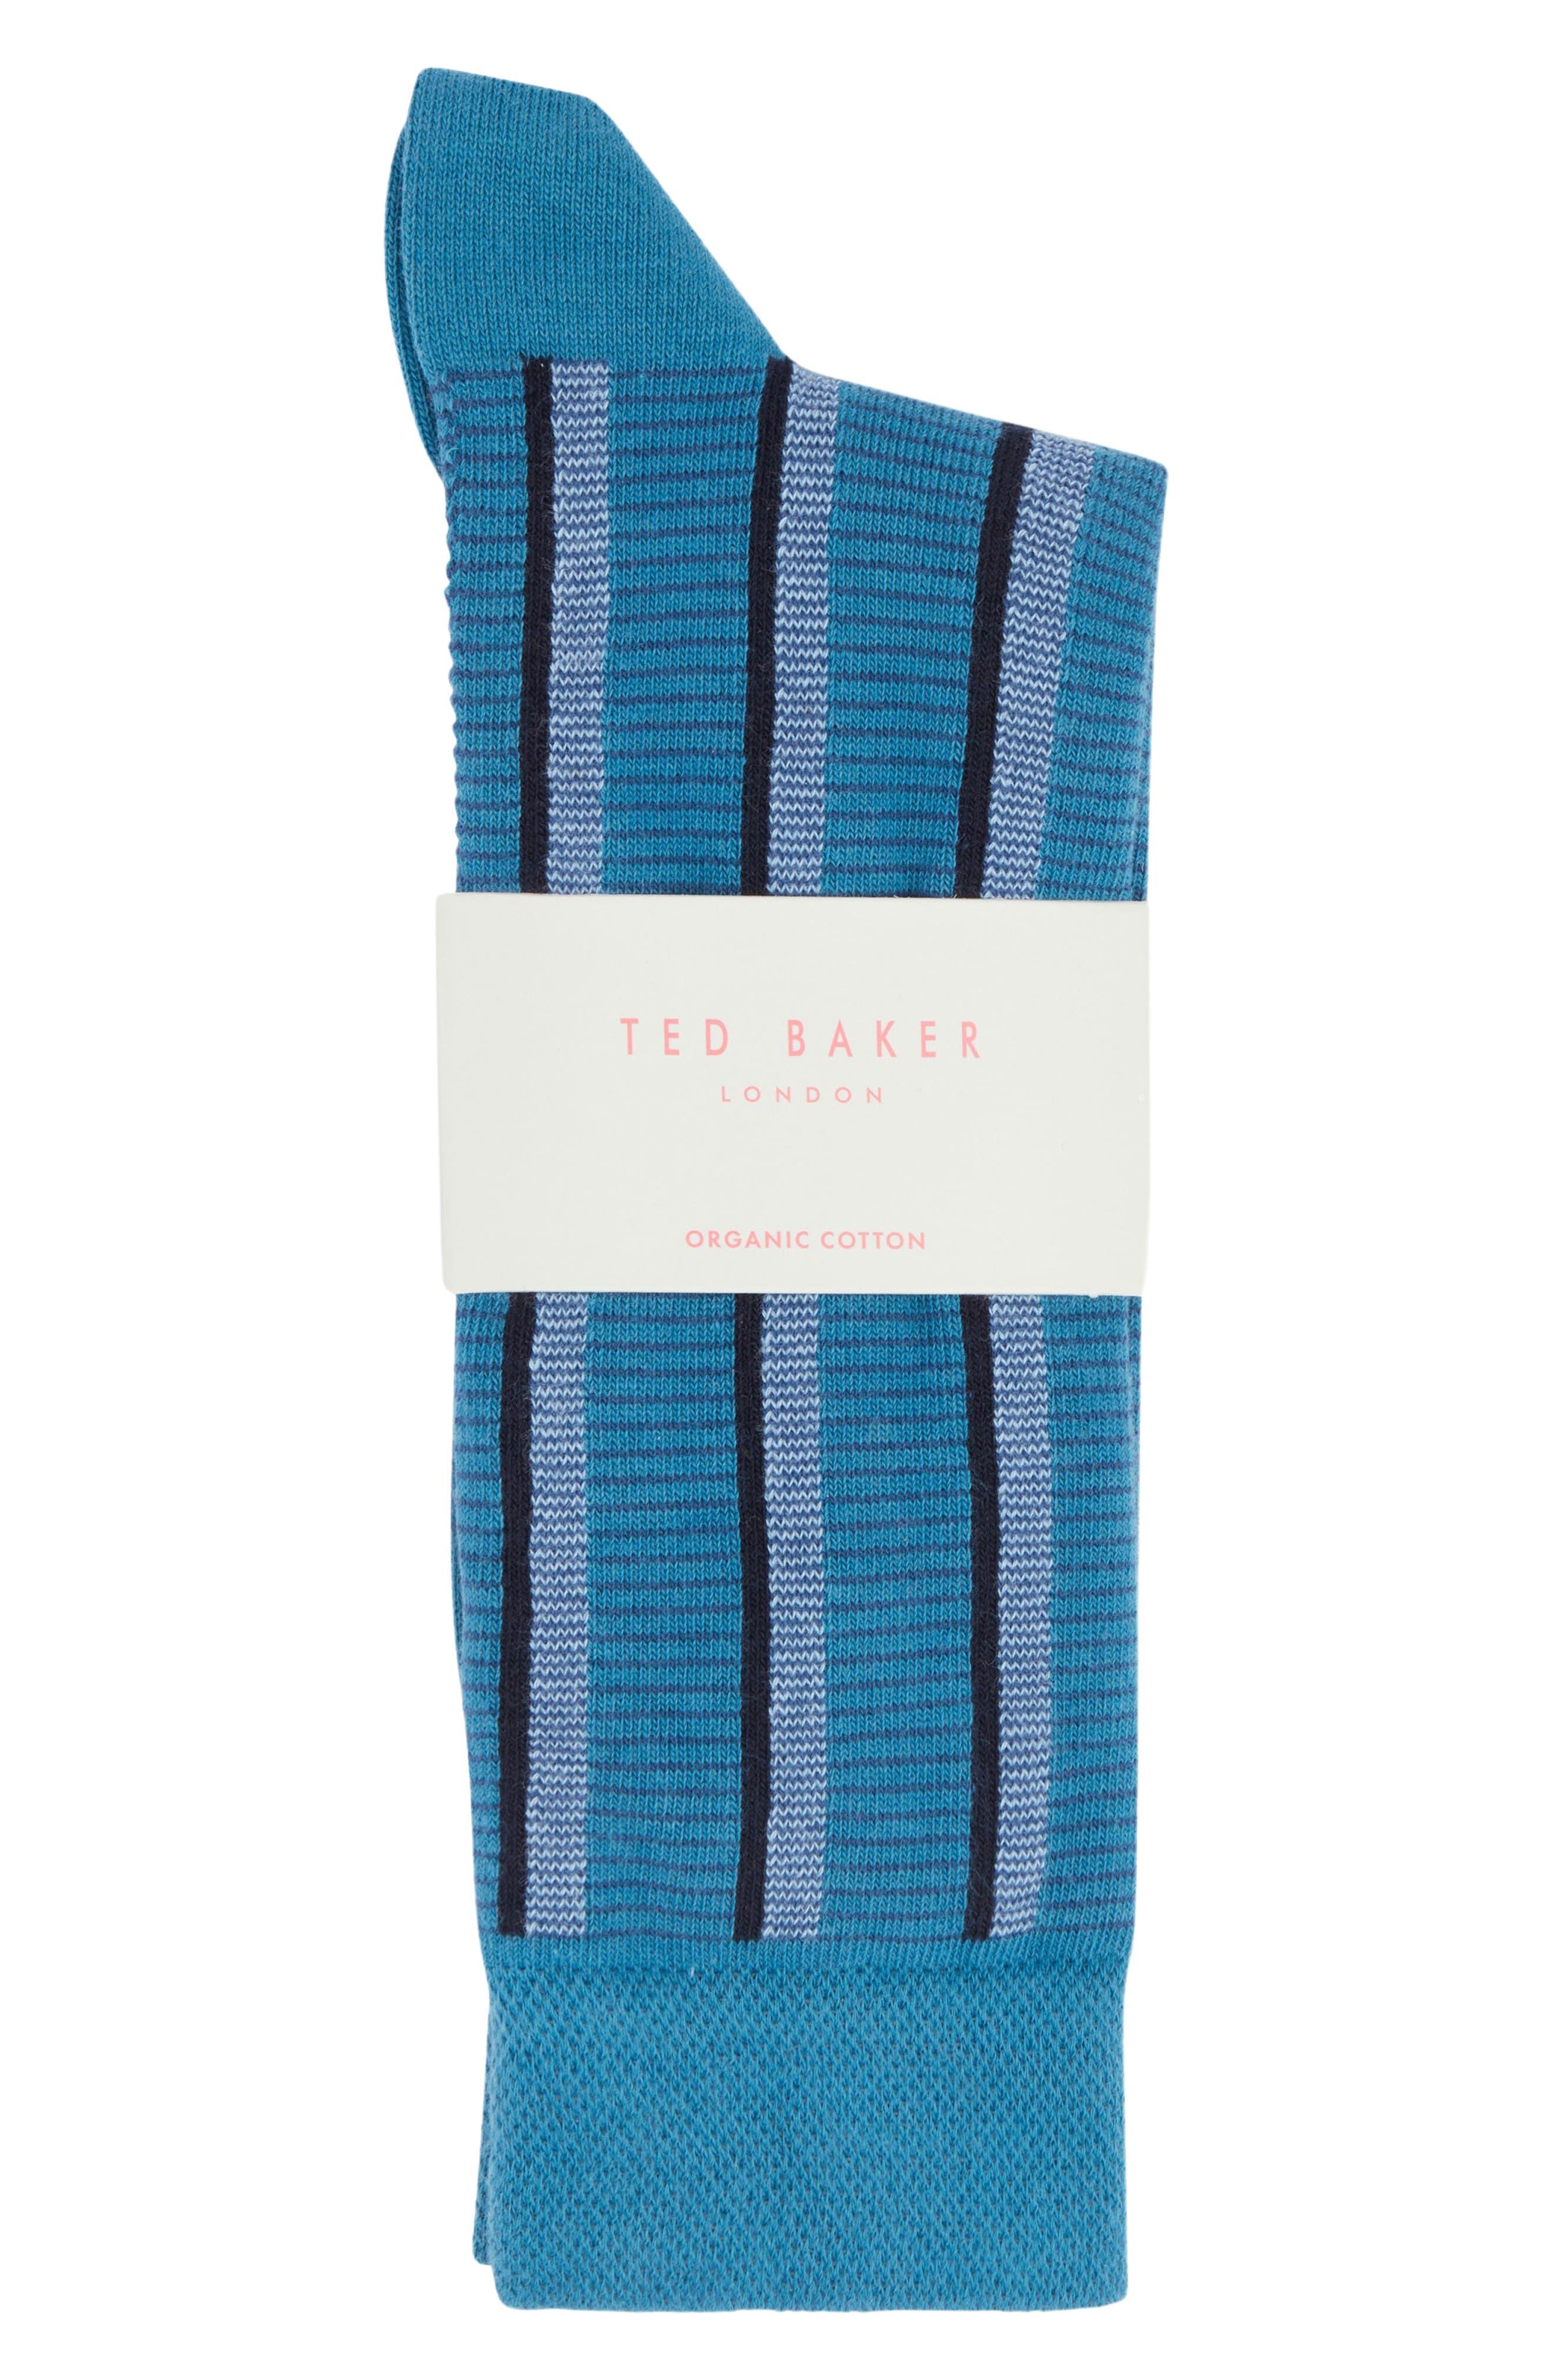 https://cdna.lystit.com/photos/nordstrom/1a4acdd7/ted-baker-Blue-Hotday-Vertical-Stripe-Organic-Cotton-Blend-Dress-Socks.jpeg